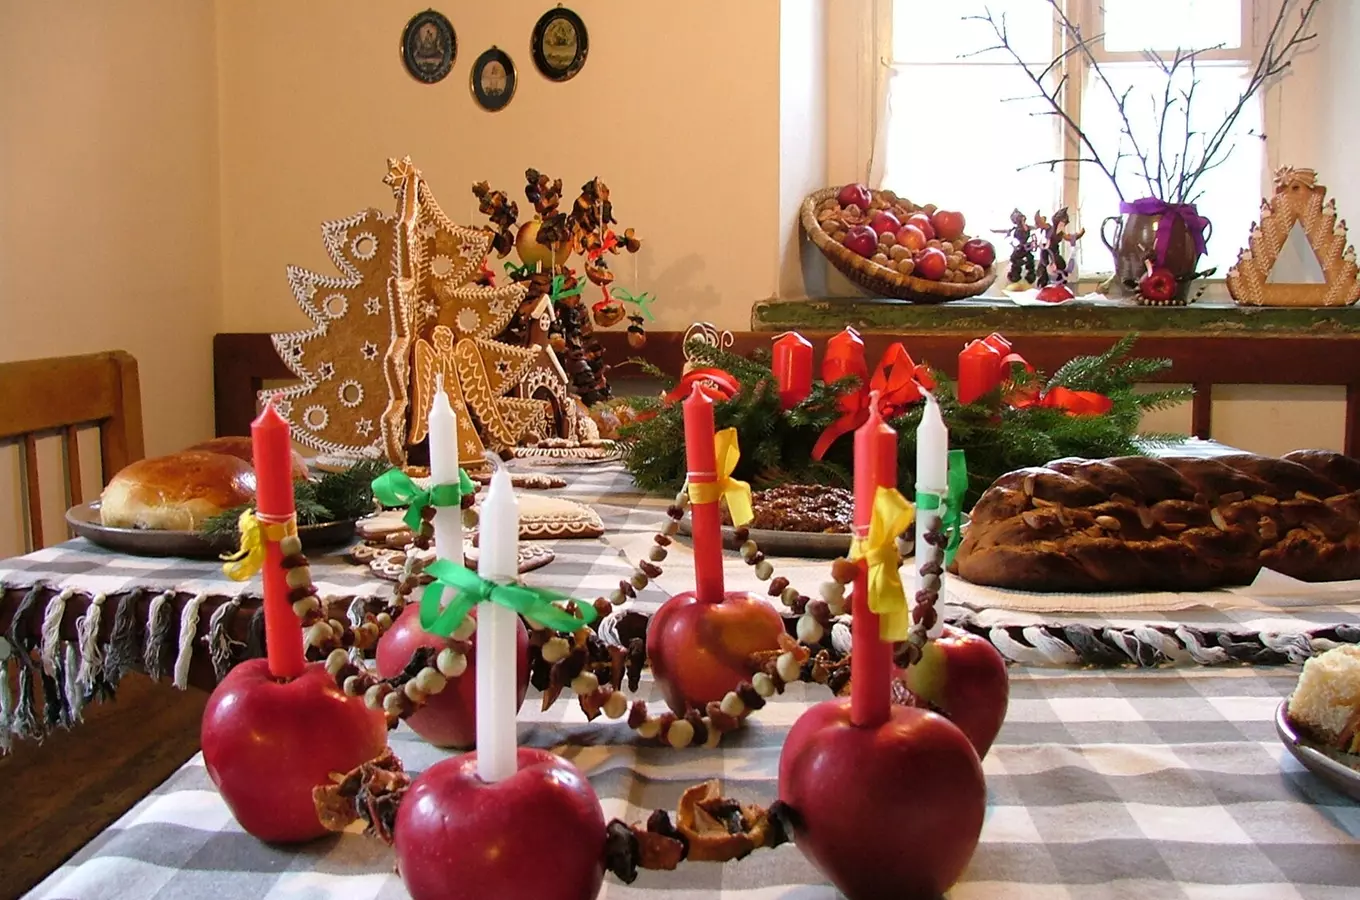 Na oslavu nejkrásnějších svátků v roce zve skanzen Zubrnice